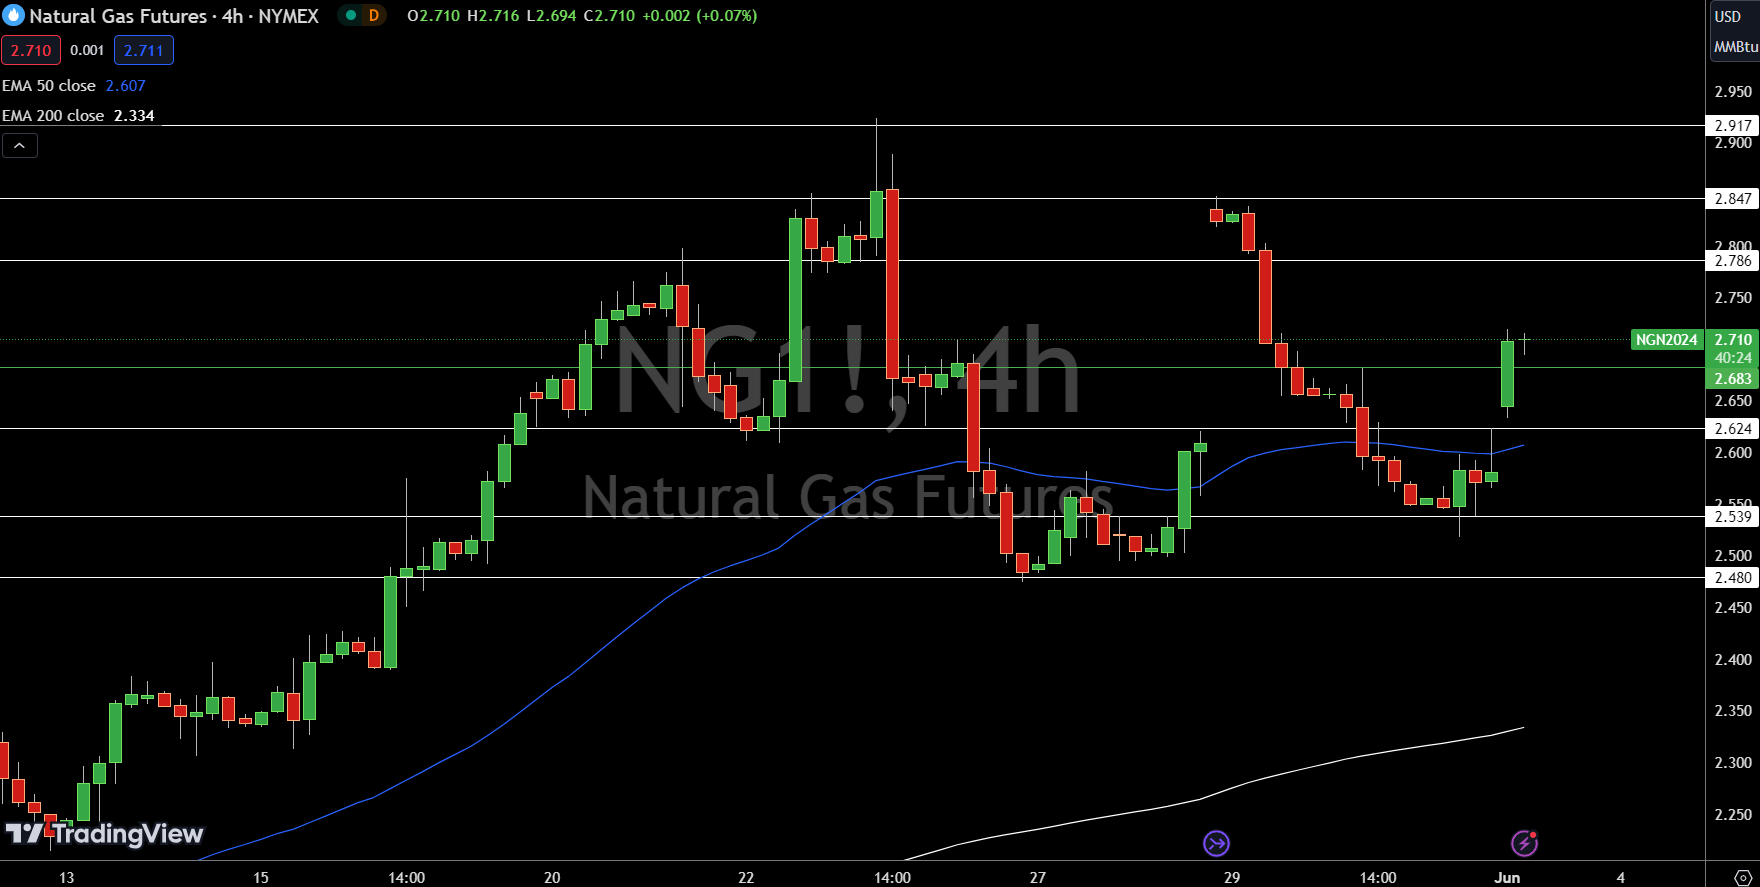 Natural Gas (NG) Price Chart